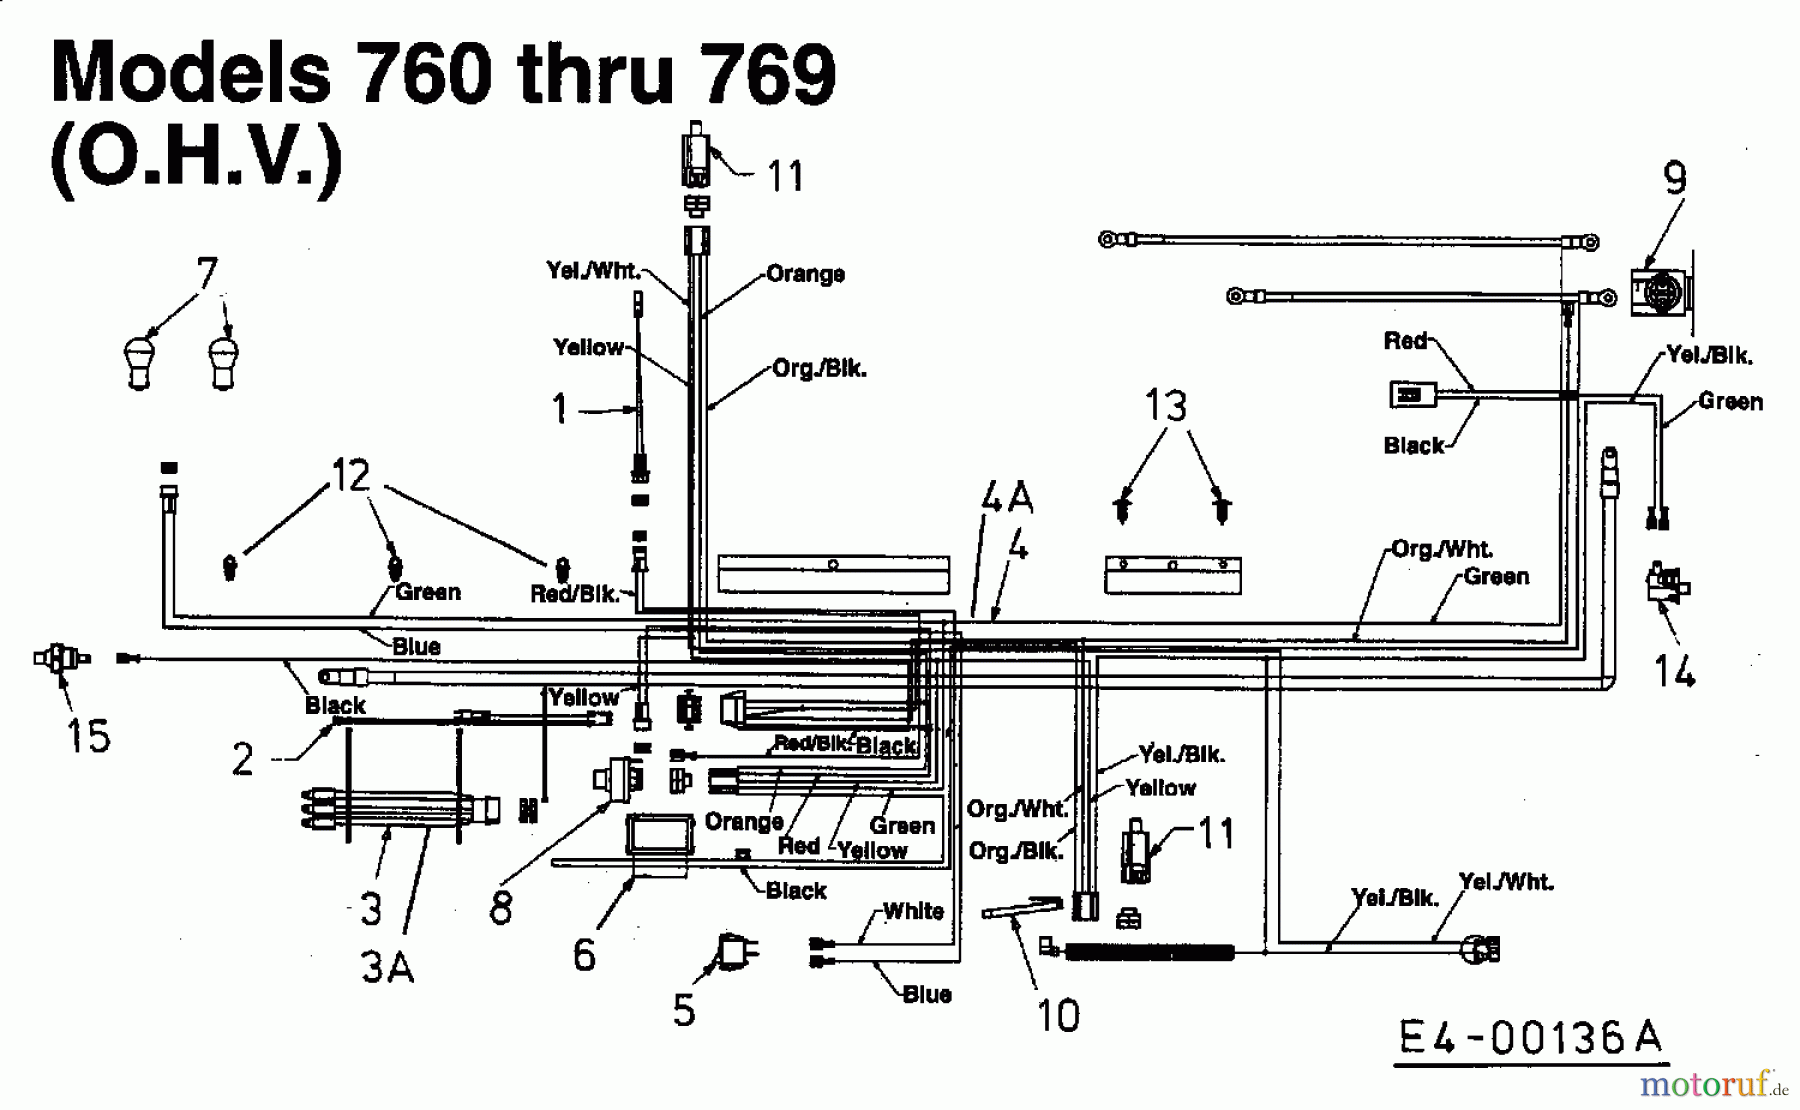  Yard-Man Lawn tractors TN 7145 13EP764N643  (2001) Wiring diagram for O.H.V.